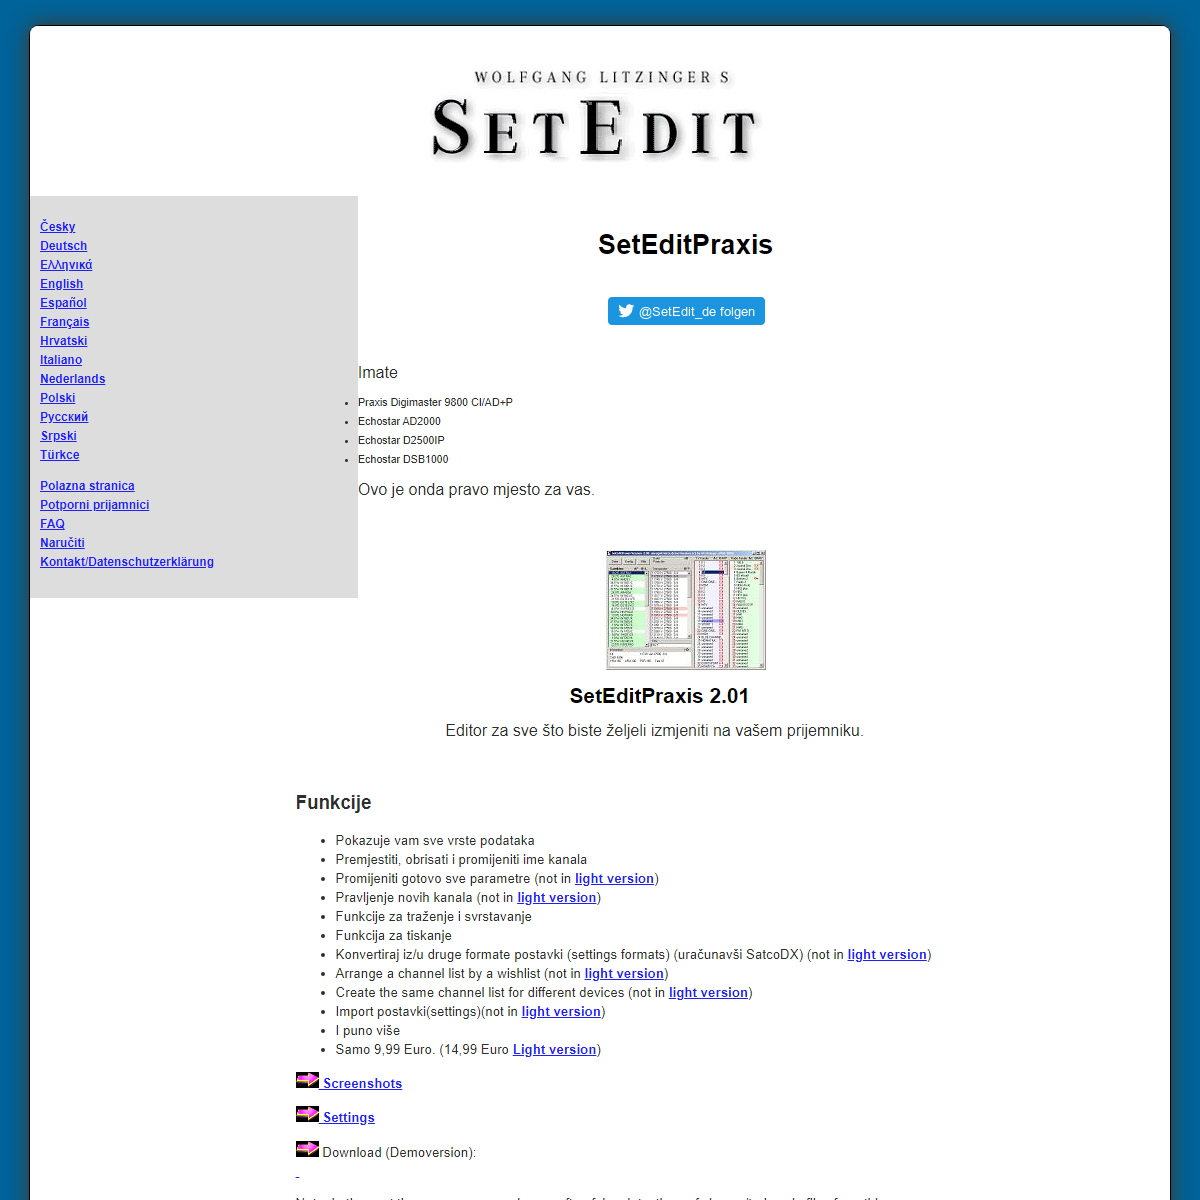 A complete backup of https://www.setedit.de/SetEdit.php?spr=13&Editor=25